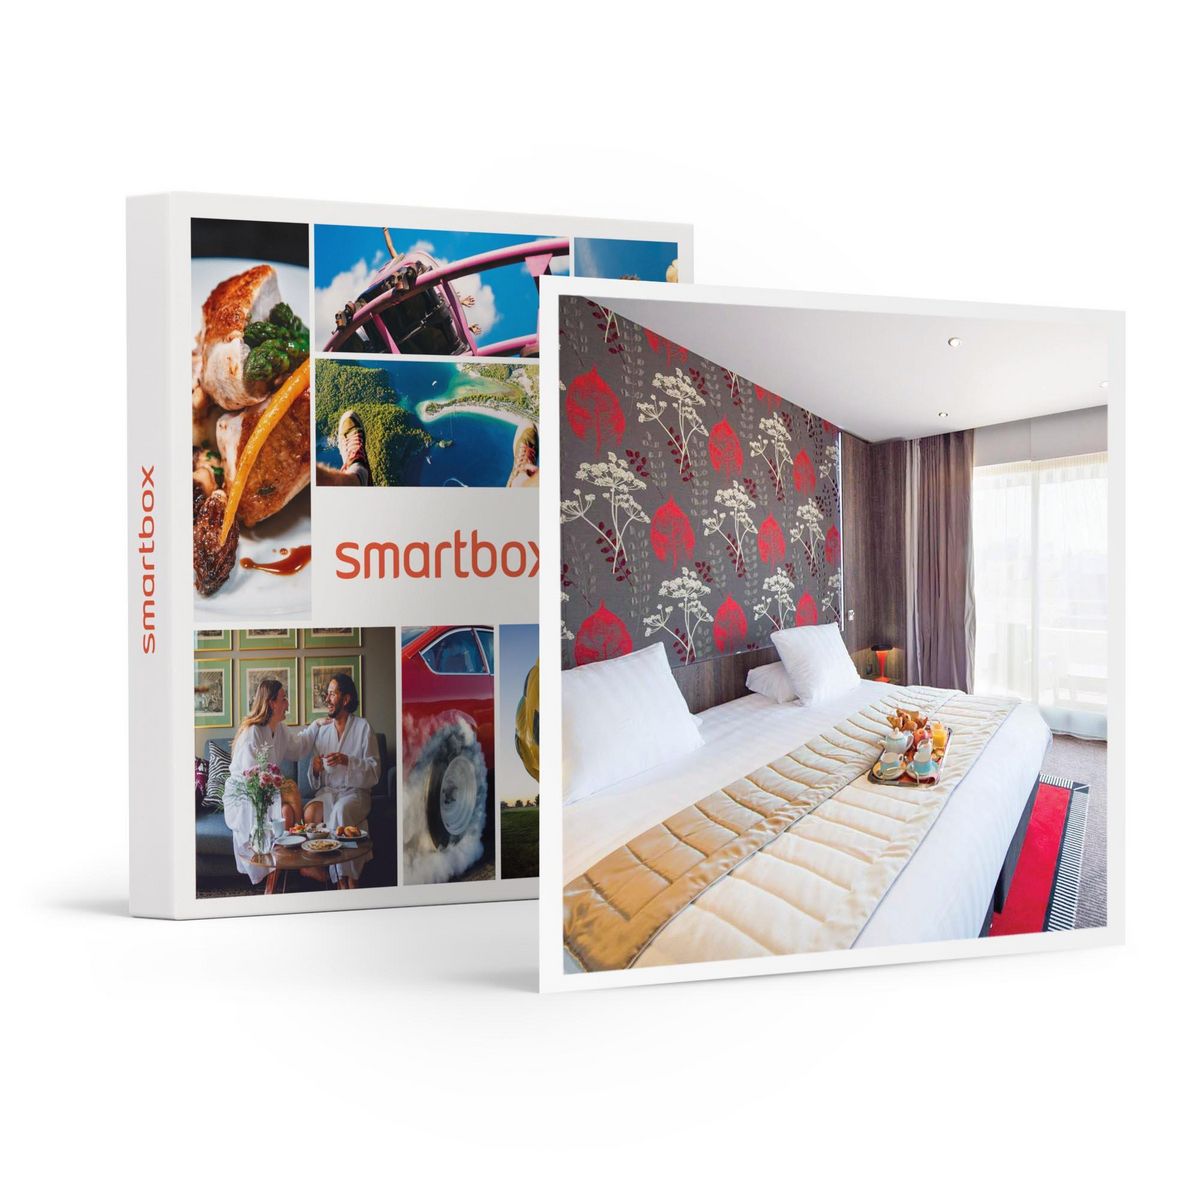 Smartbox Séjour en suite dans un hôtel Best Western 4* avec pause bien-être - Coffret Cadeau Séjour